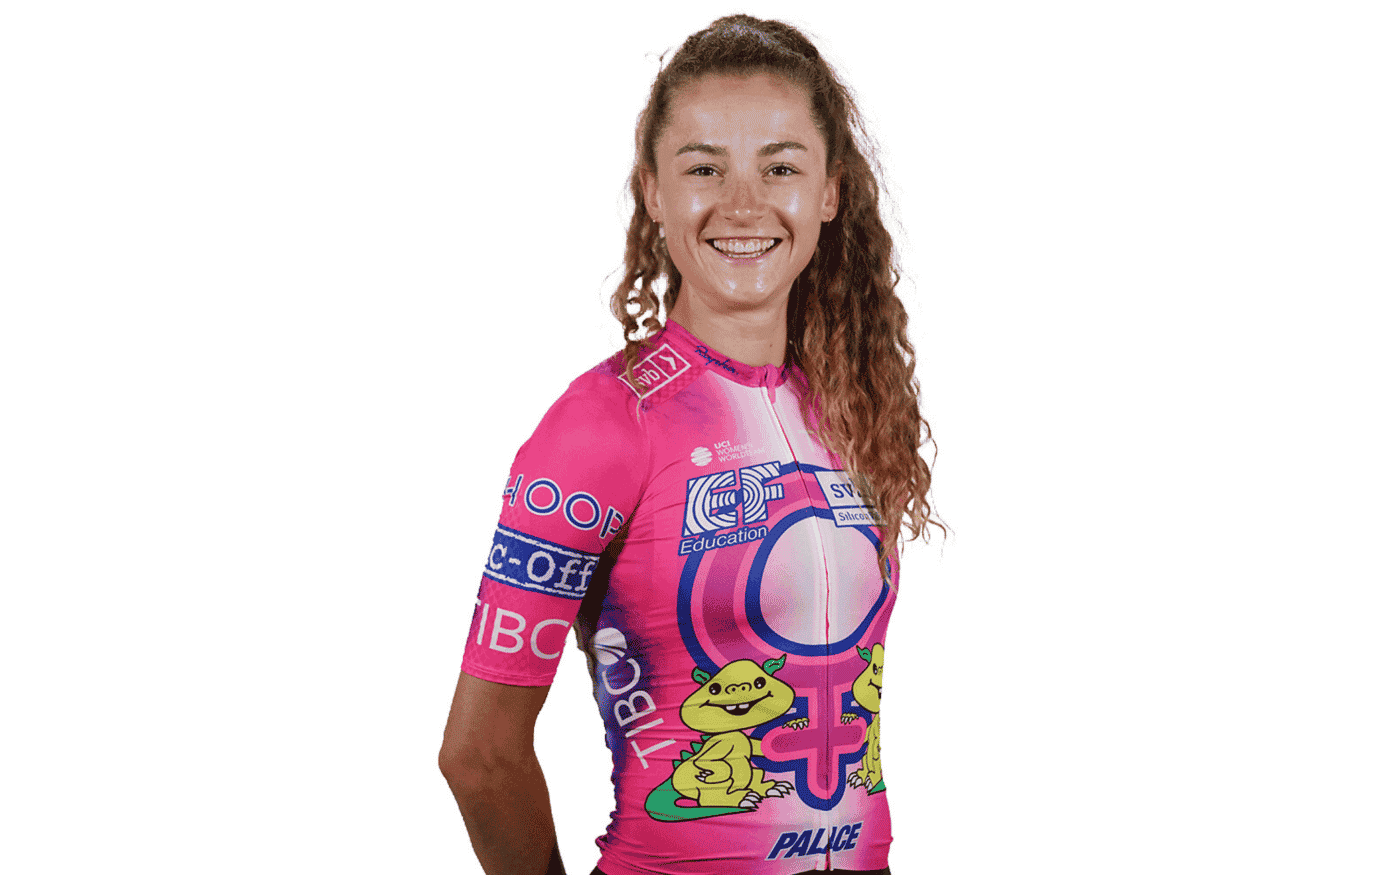 Tous les maillots du Tour de France Femmes avec Zwift 2022